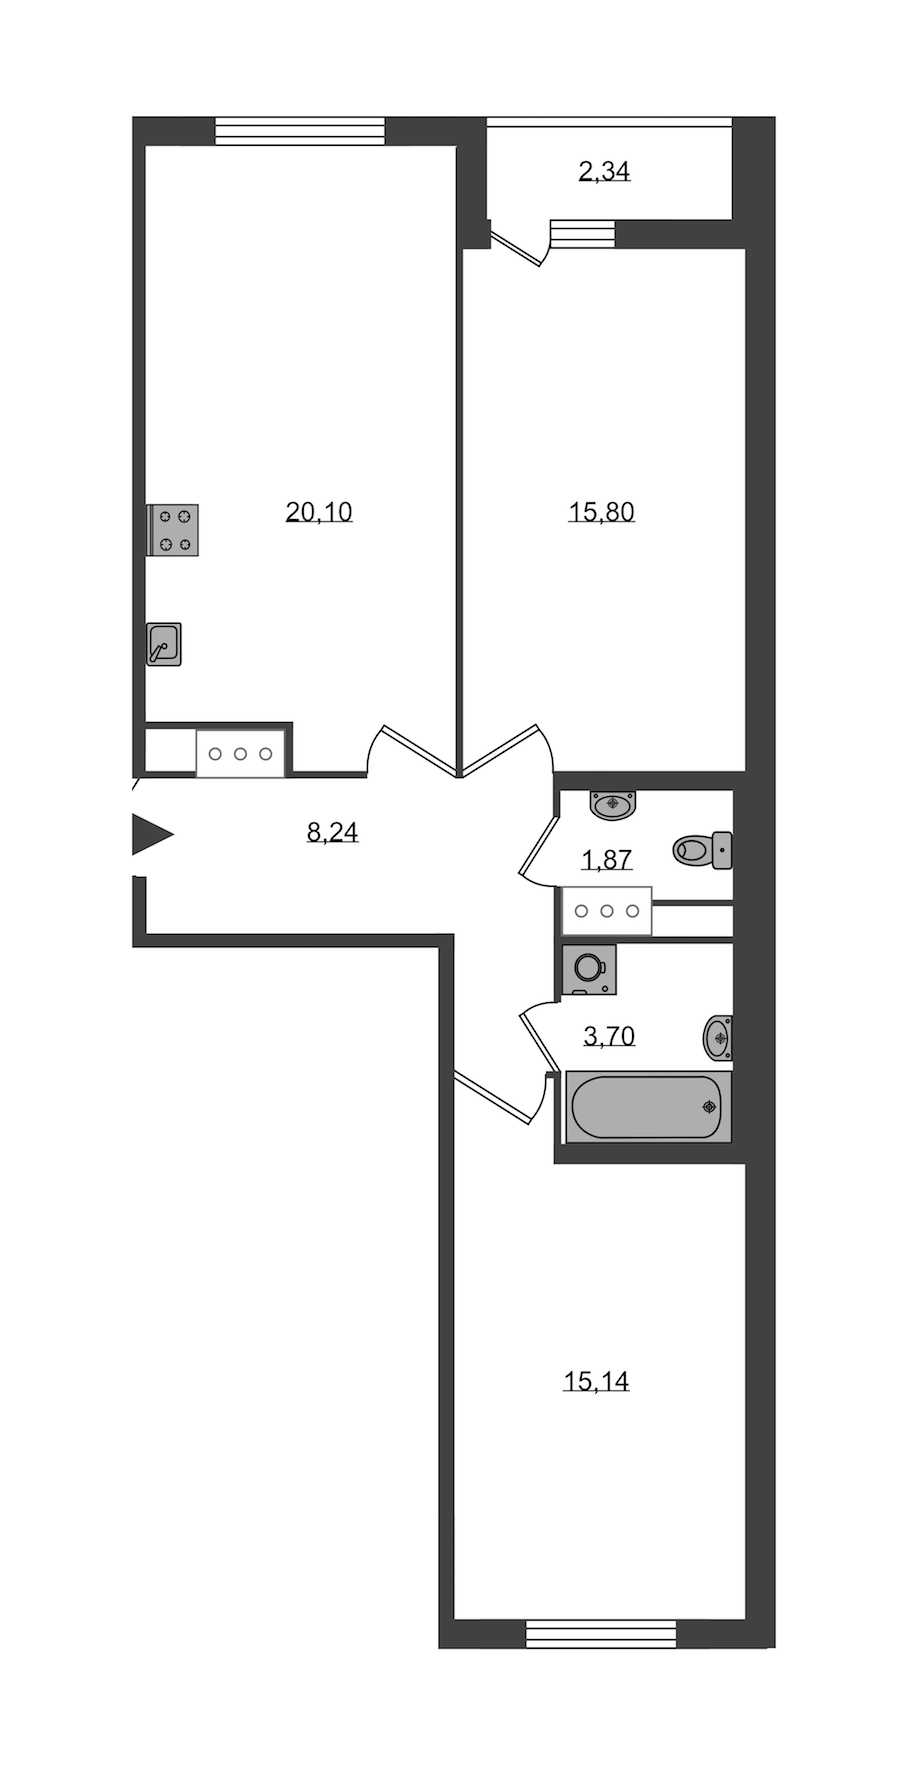 Двухкомнатная квартира в KVS: площадь 64.85 м2 , этаж: 3 – купить в Санкт-Петербурге